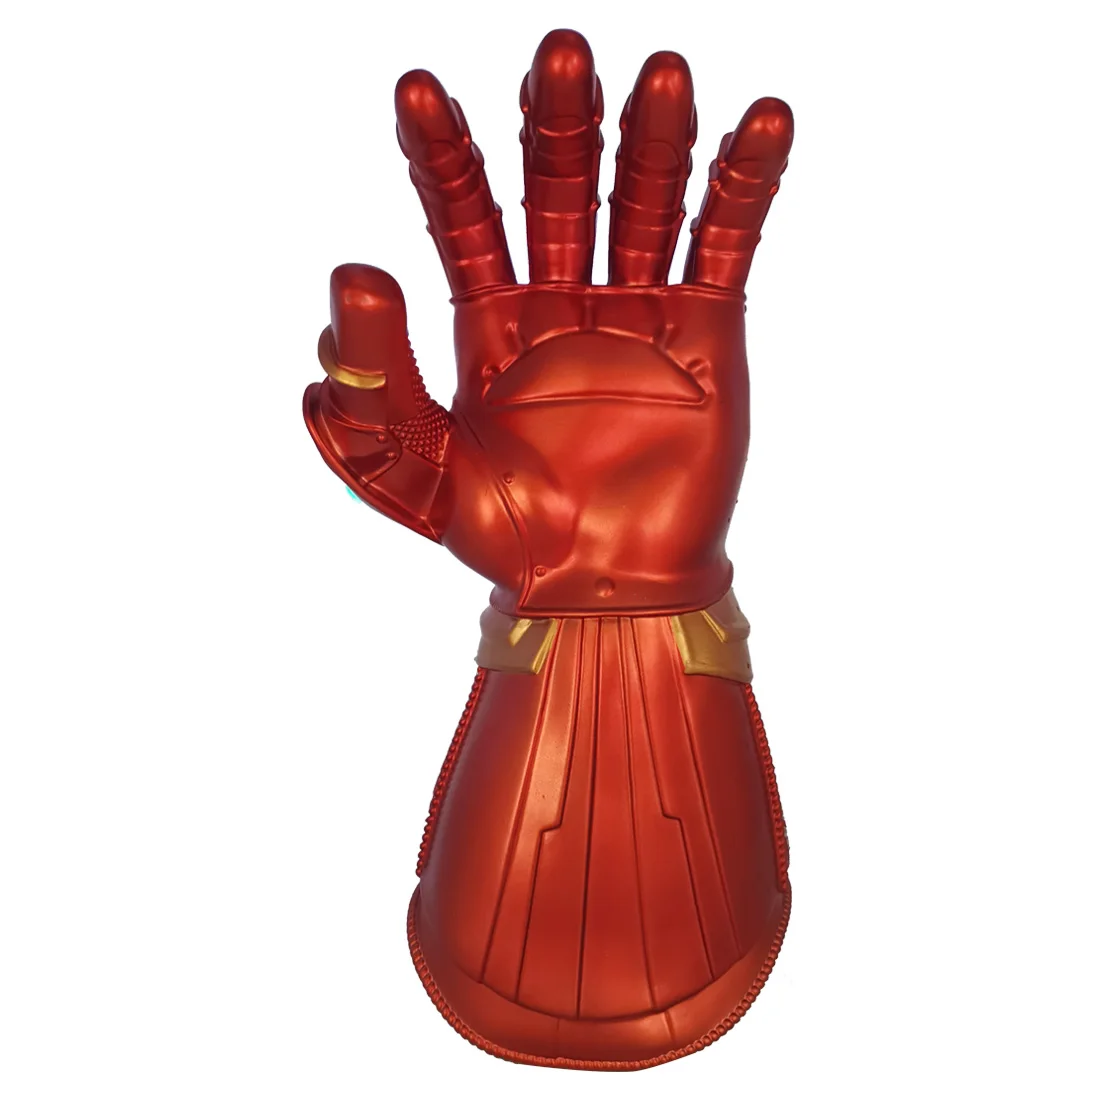 Endgame Железный человек Бесконечность перчатка Халк Косплей рука танос ПВХ перчатки Marvel супергерой оружие вечерние реквизит